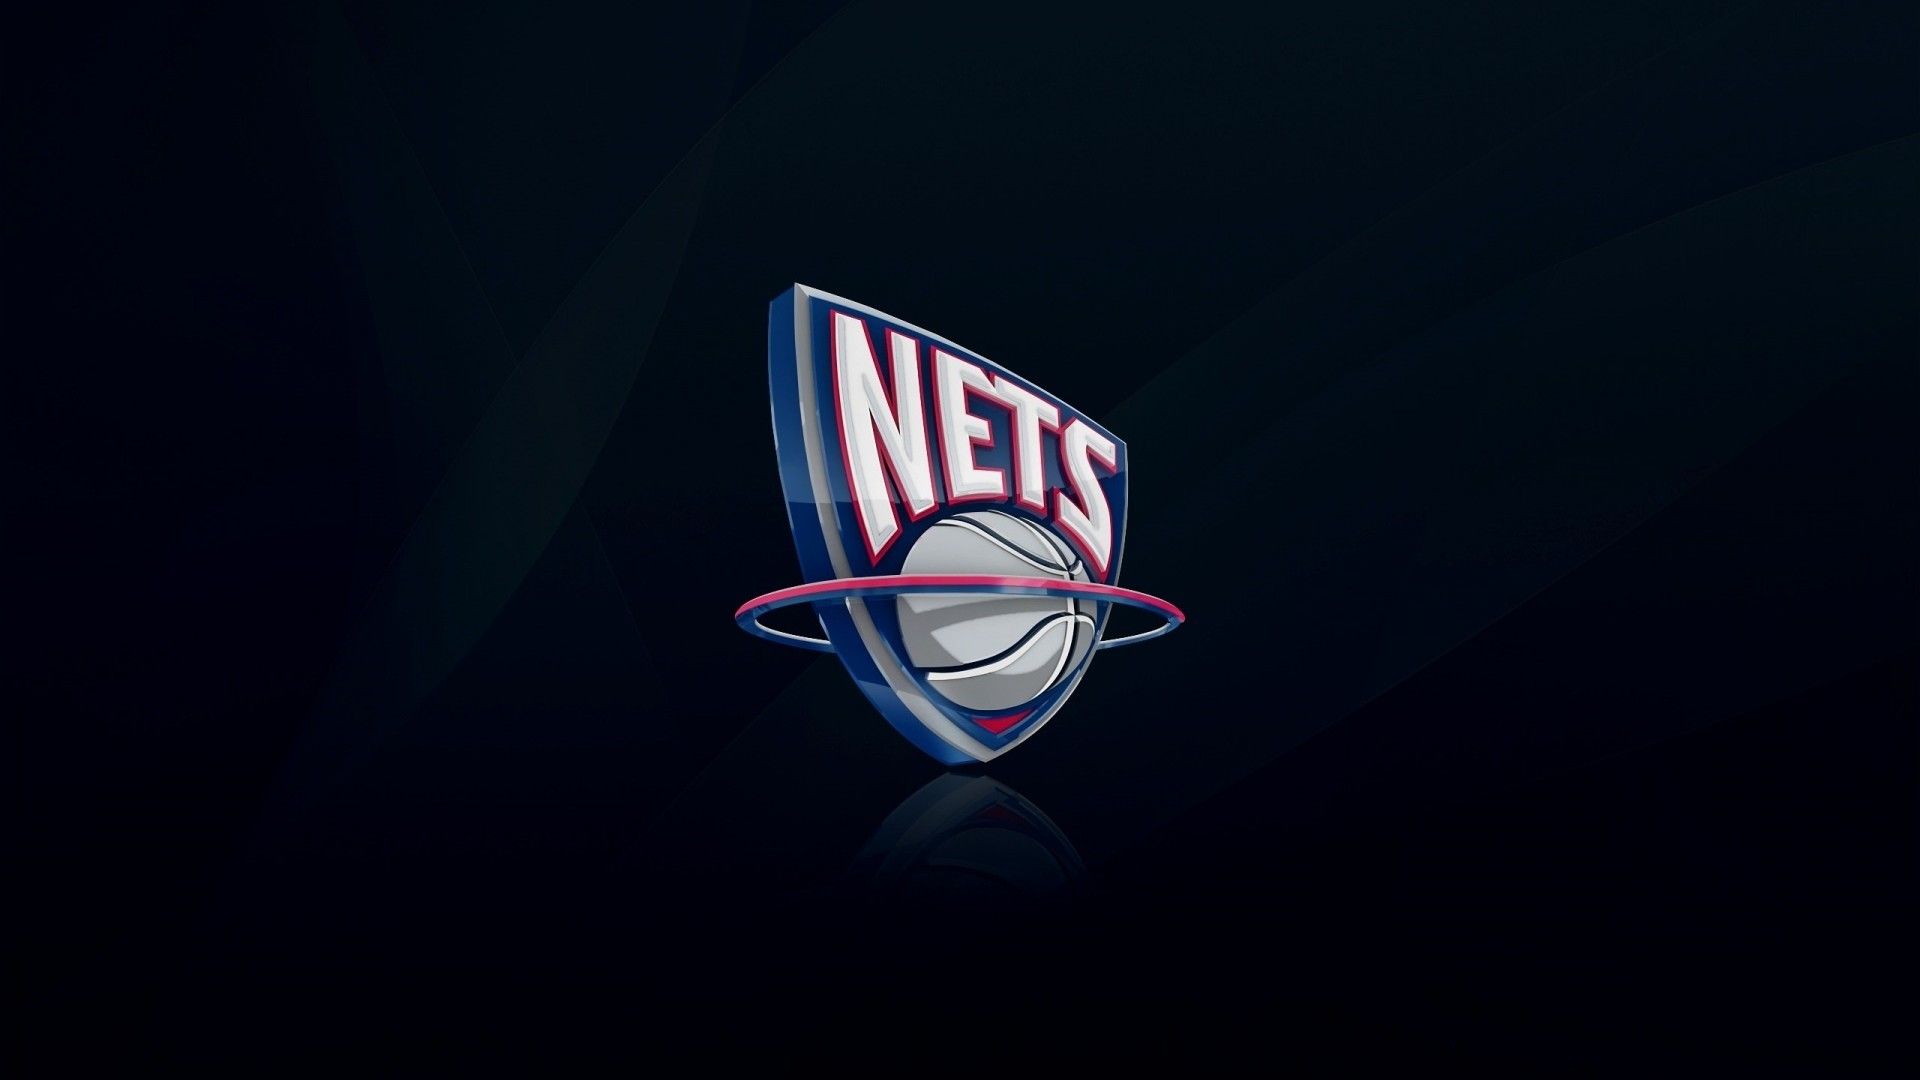 NBA Team Logos